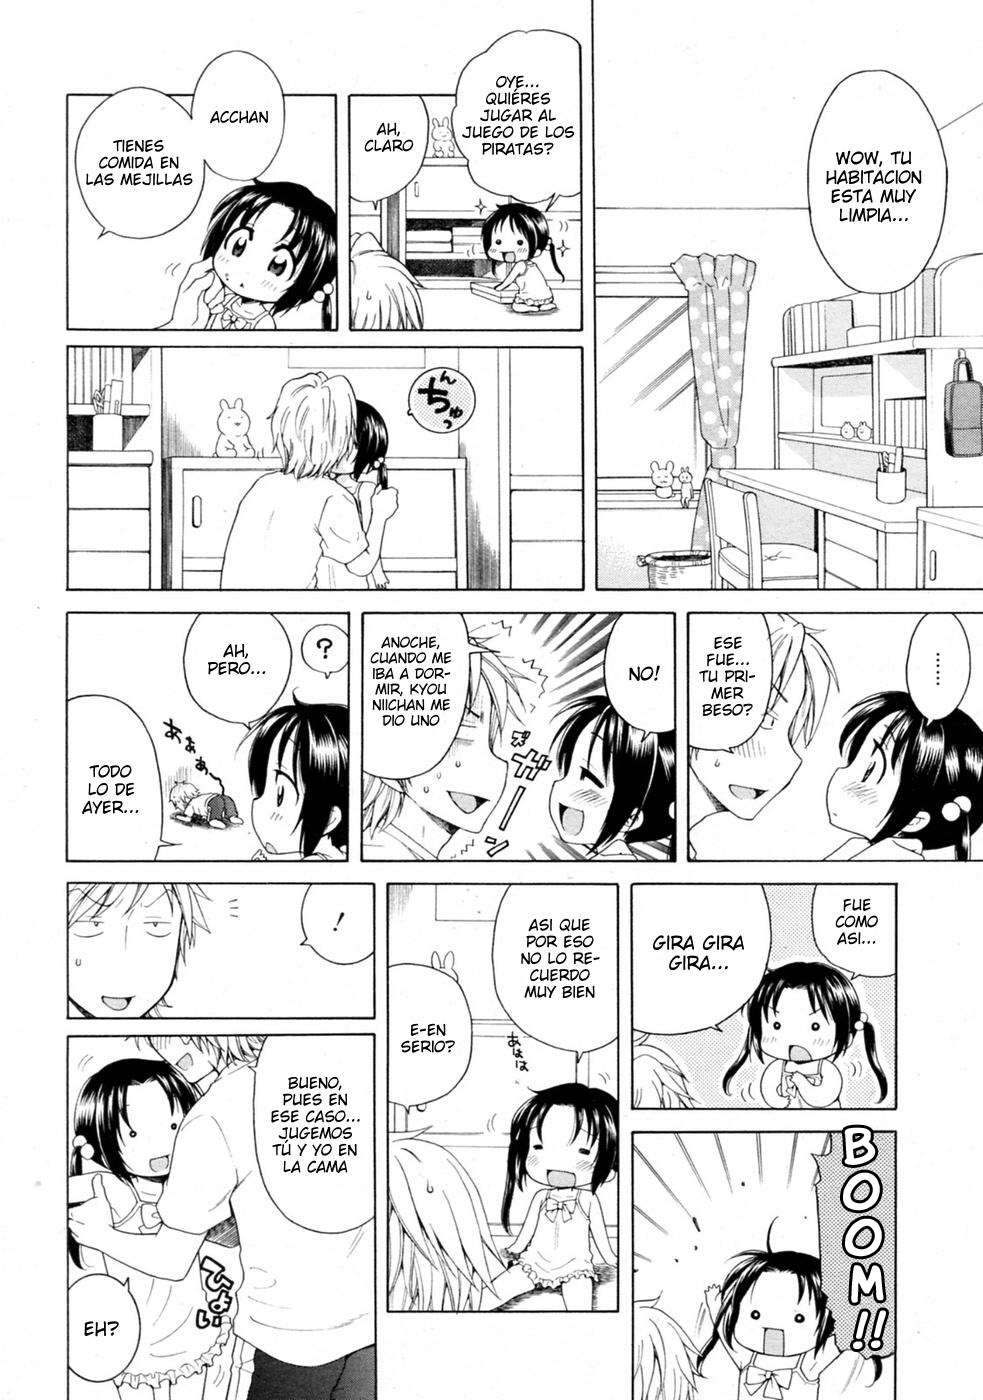 Tsukimisou No Akari (La Luz Del Apartamento Tsukimi) Chapter-2 - 9